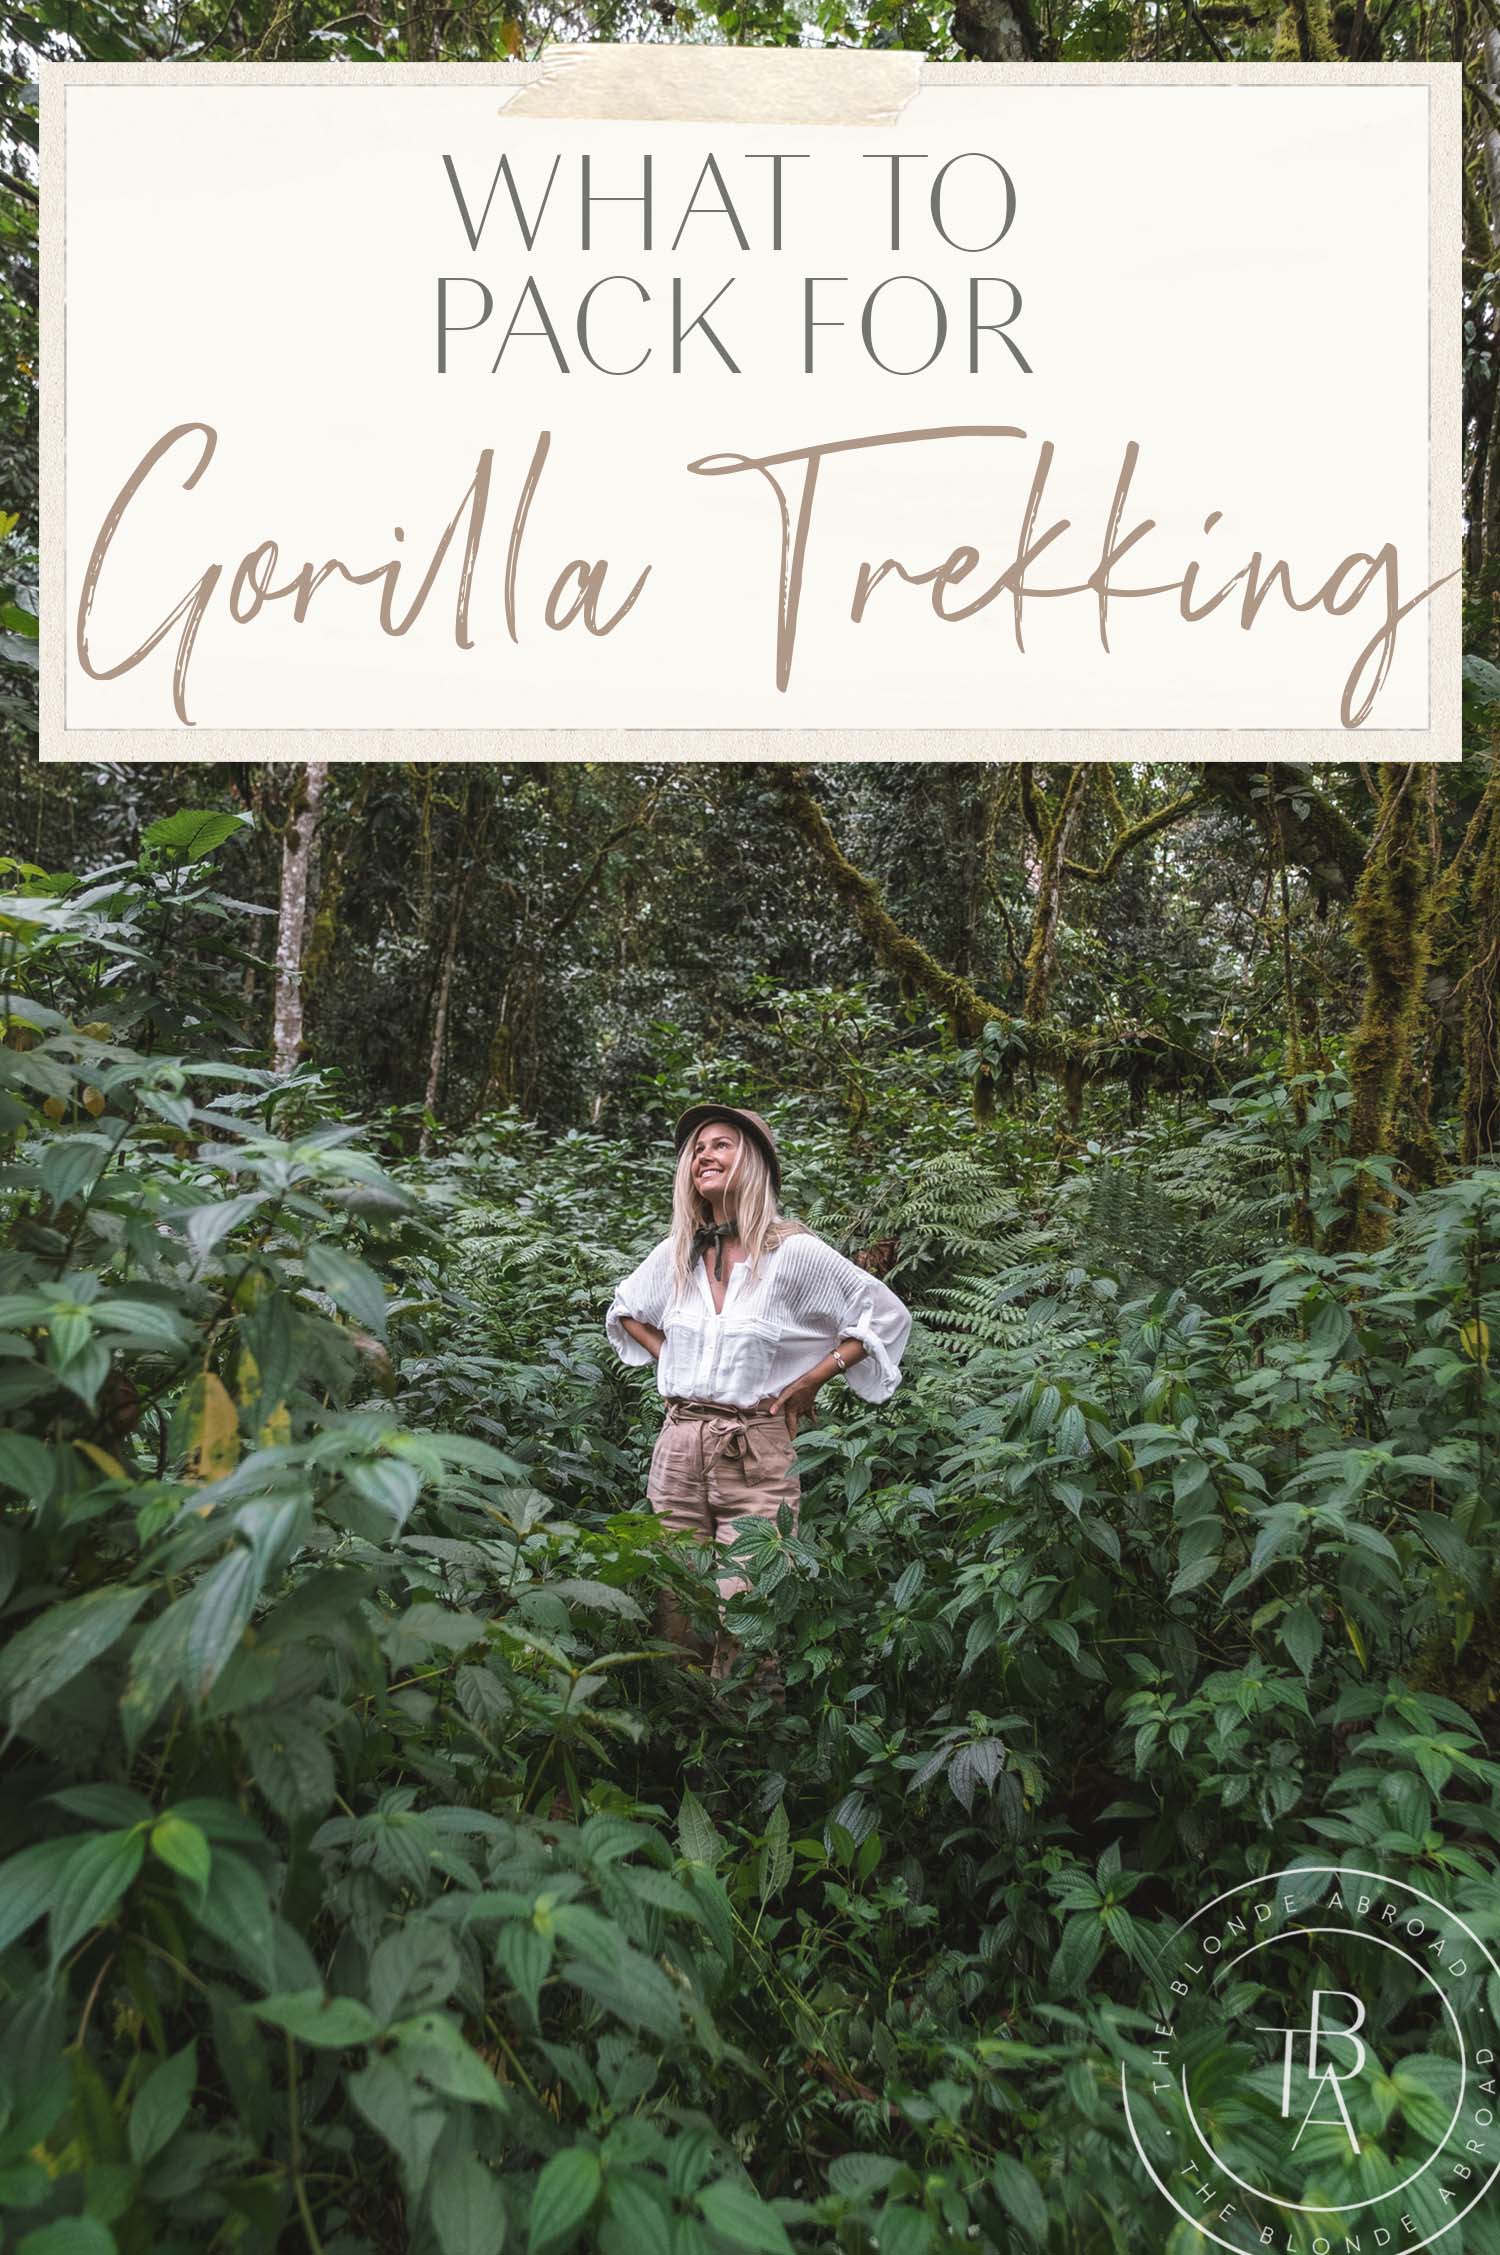 Ką pakuoti „Gorilla Trekking“